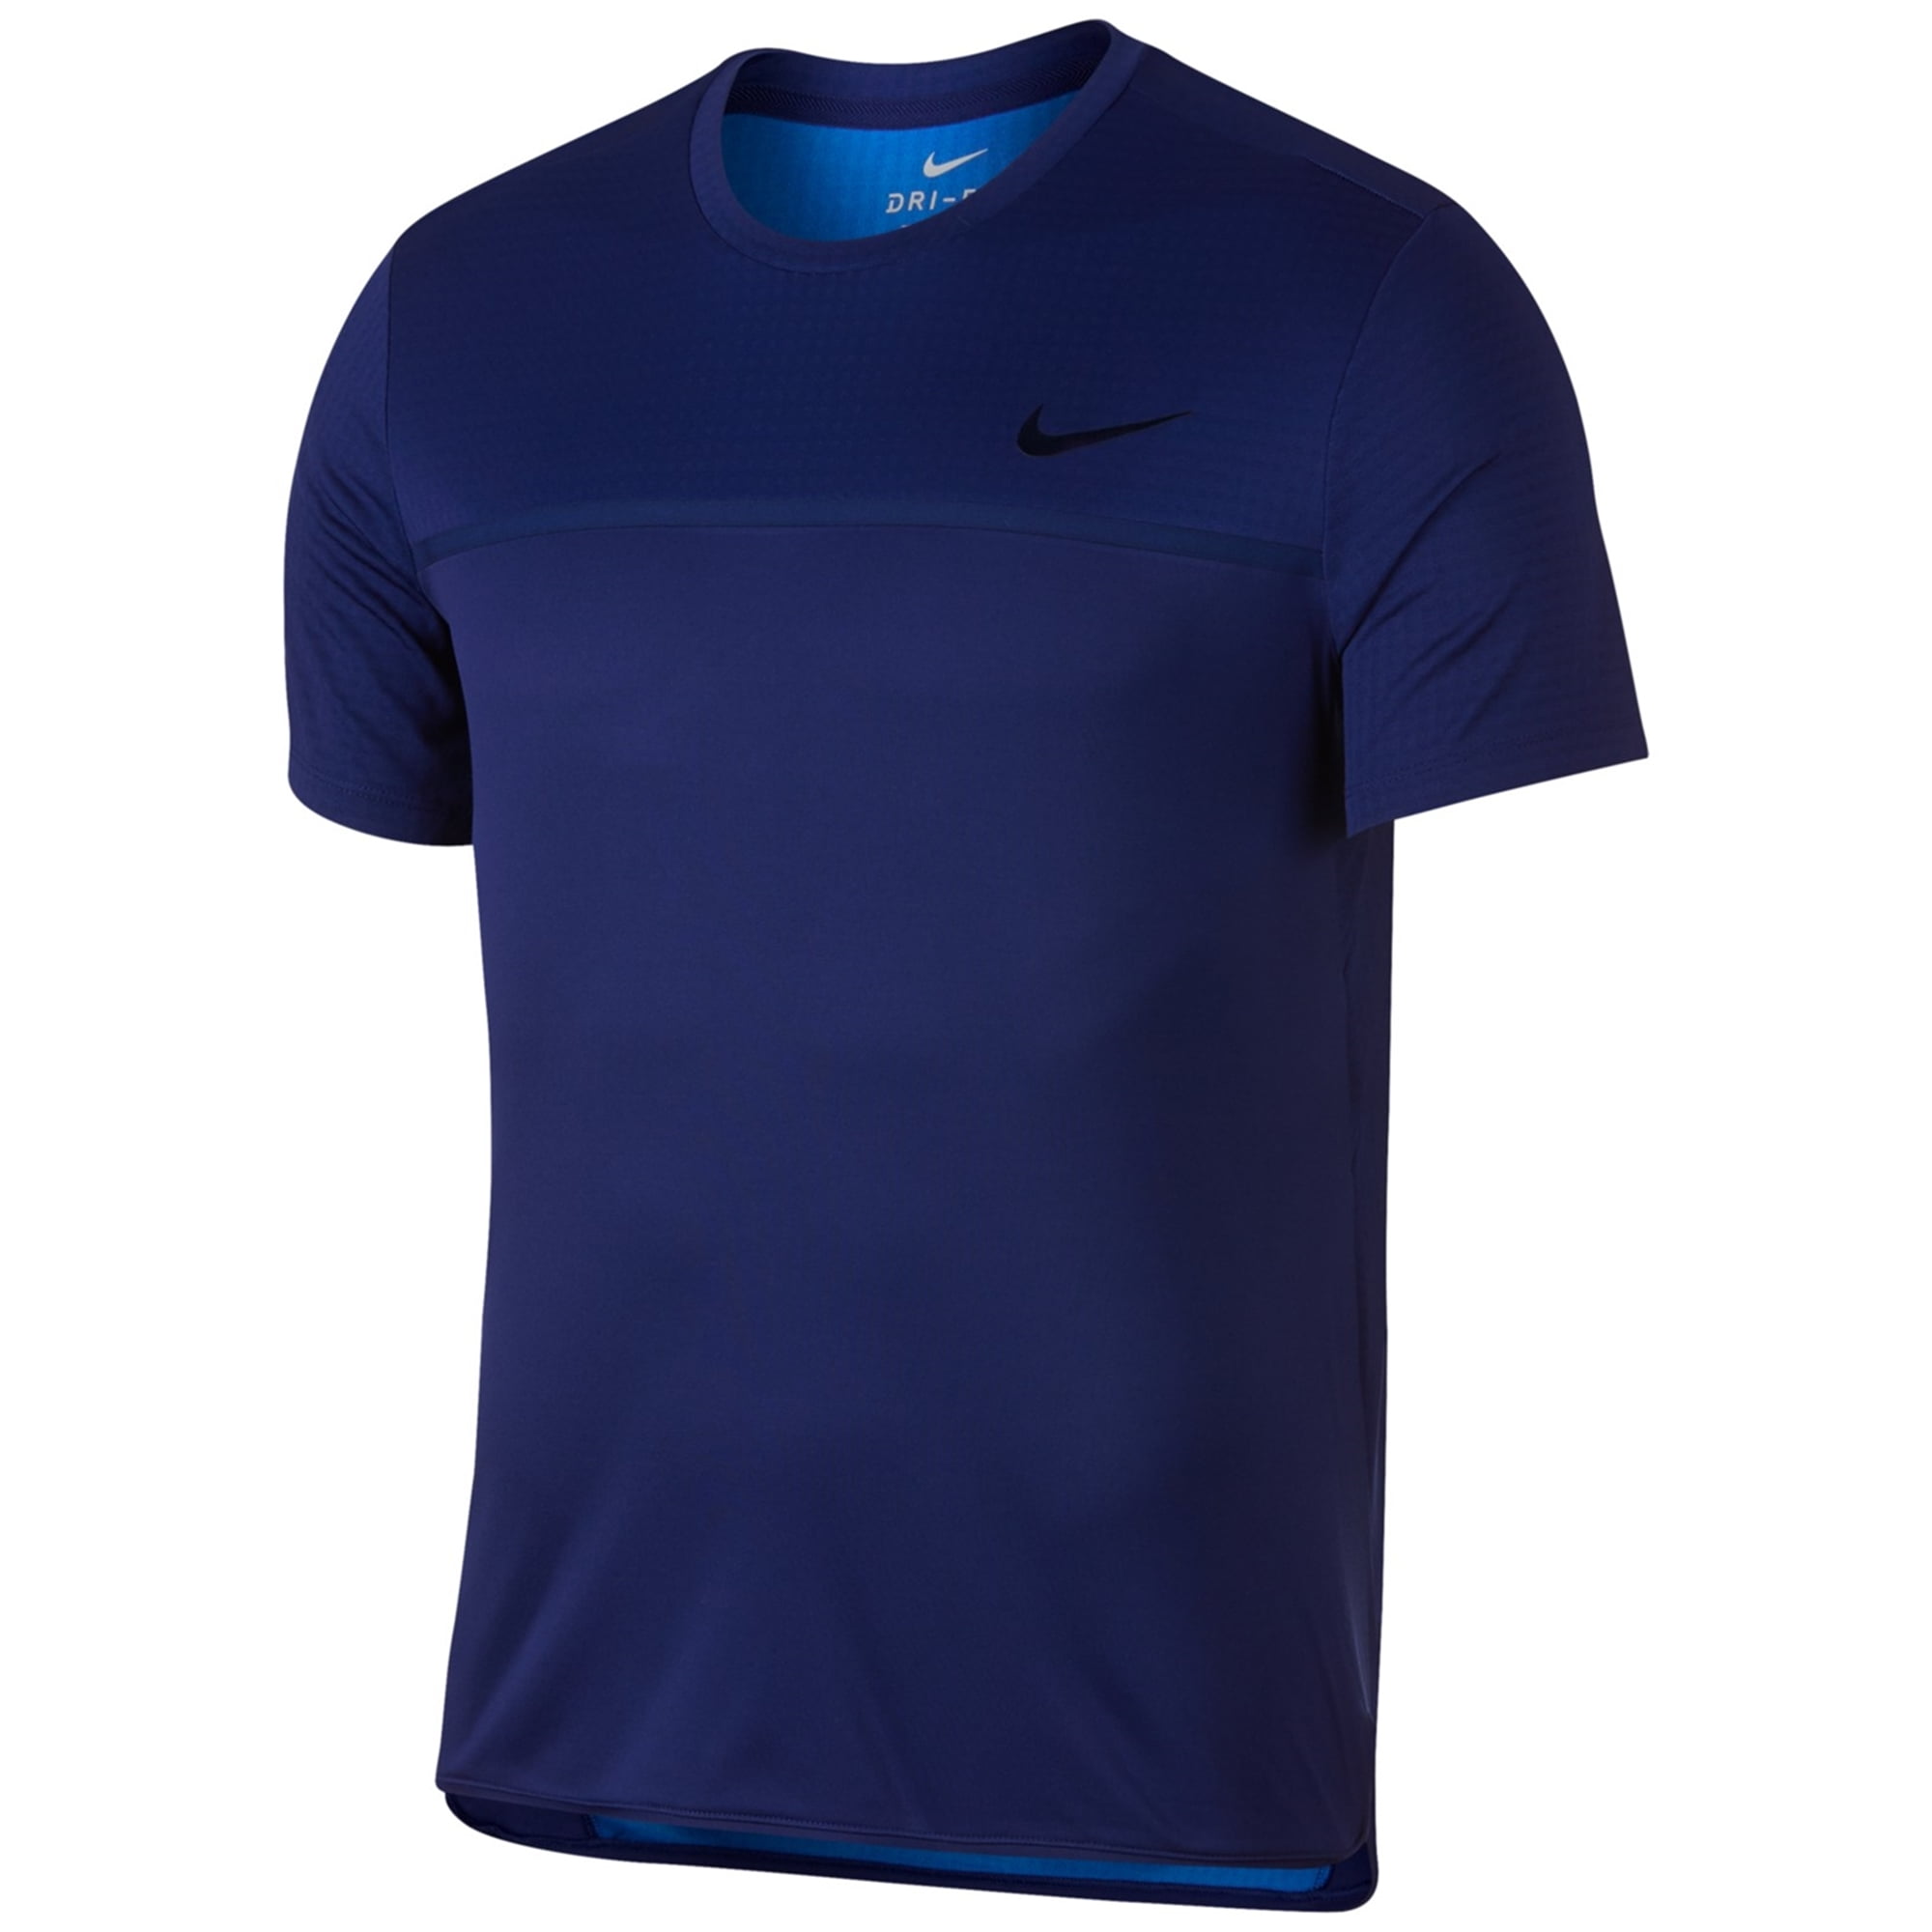 Nike - Nike Mens Tennis Basic T-Shirt - Walmart.com - Walmart.com